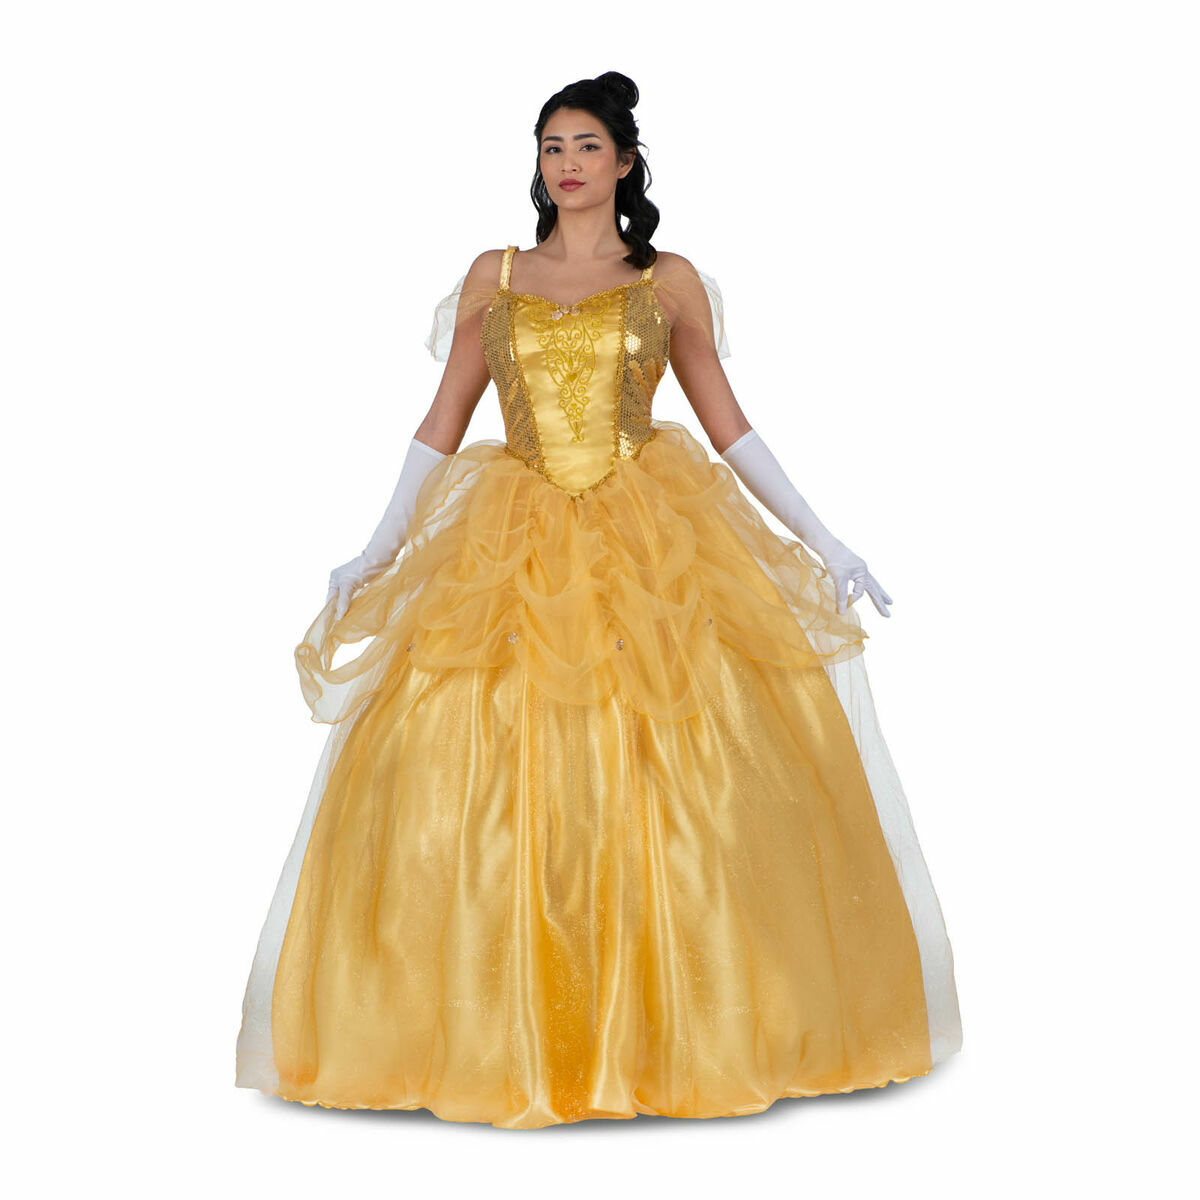 Kostüm für Erwachsene My Other Me Gelb Prinzessin Belle (3 Stücke) - M